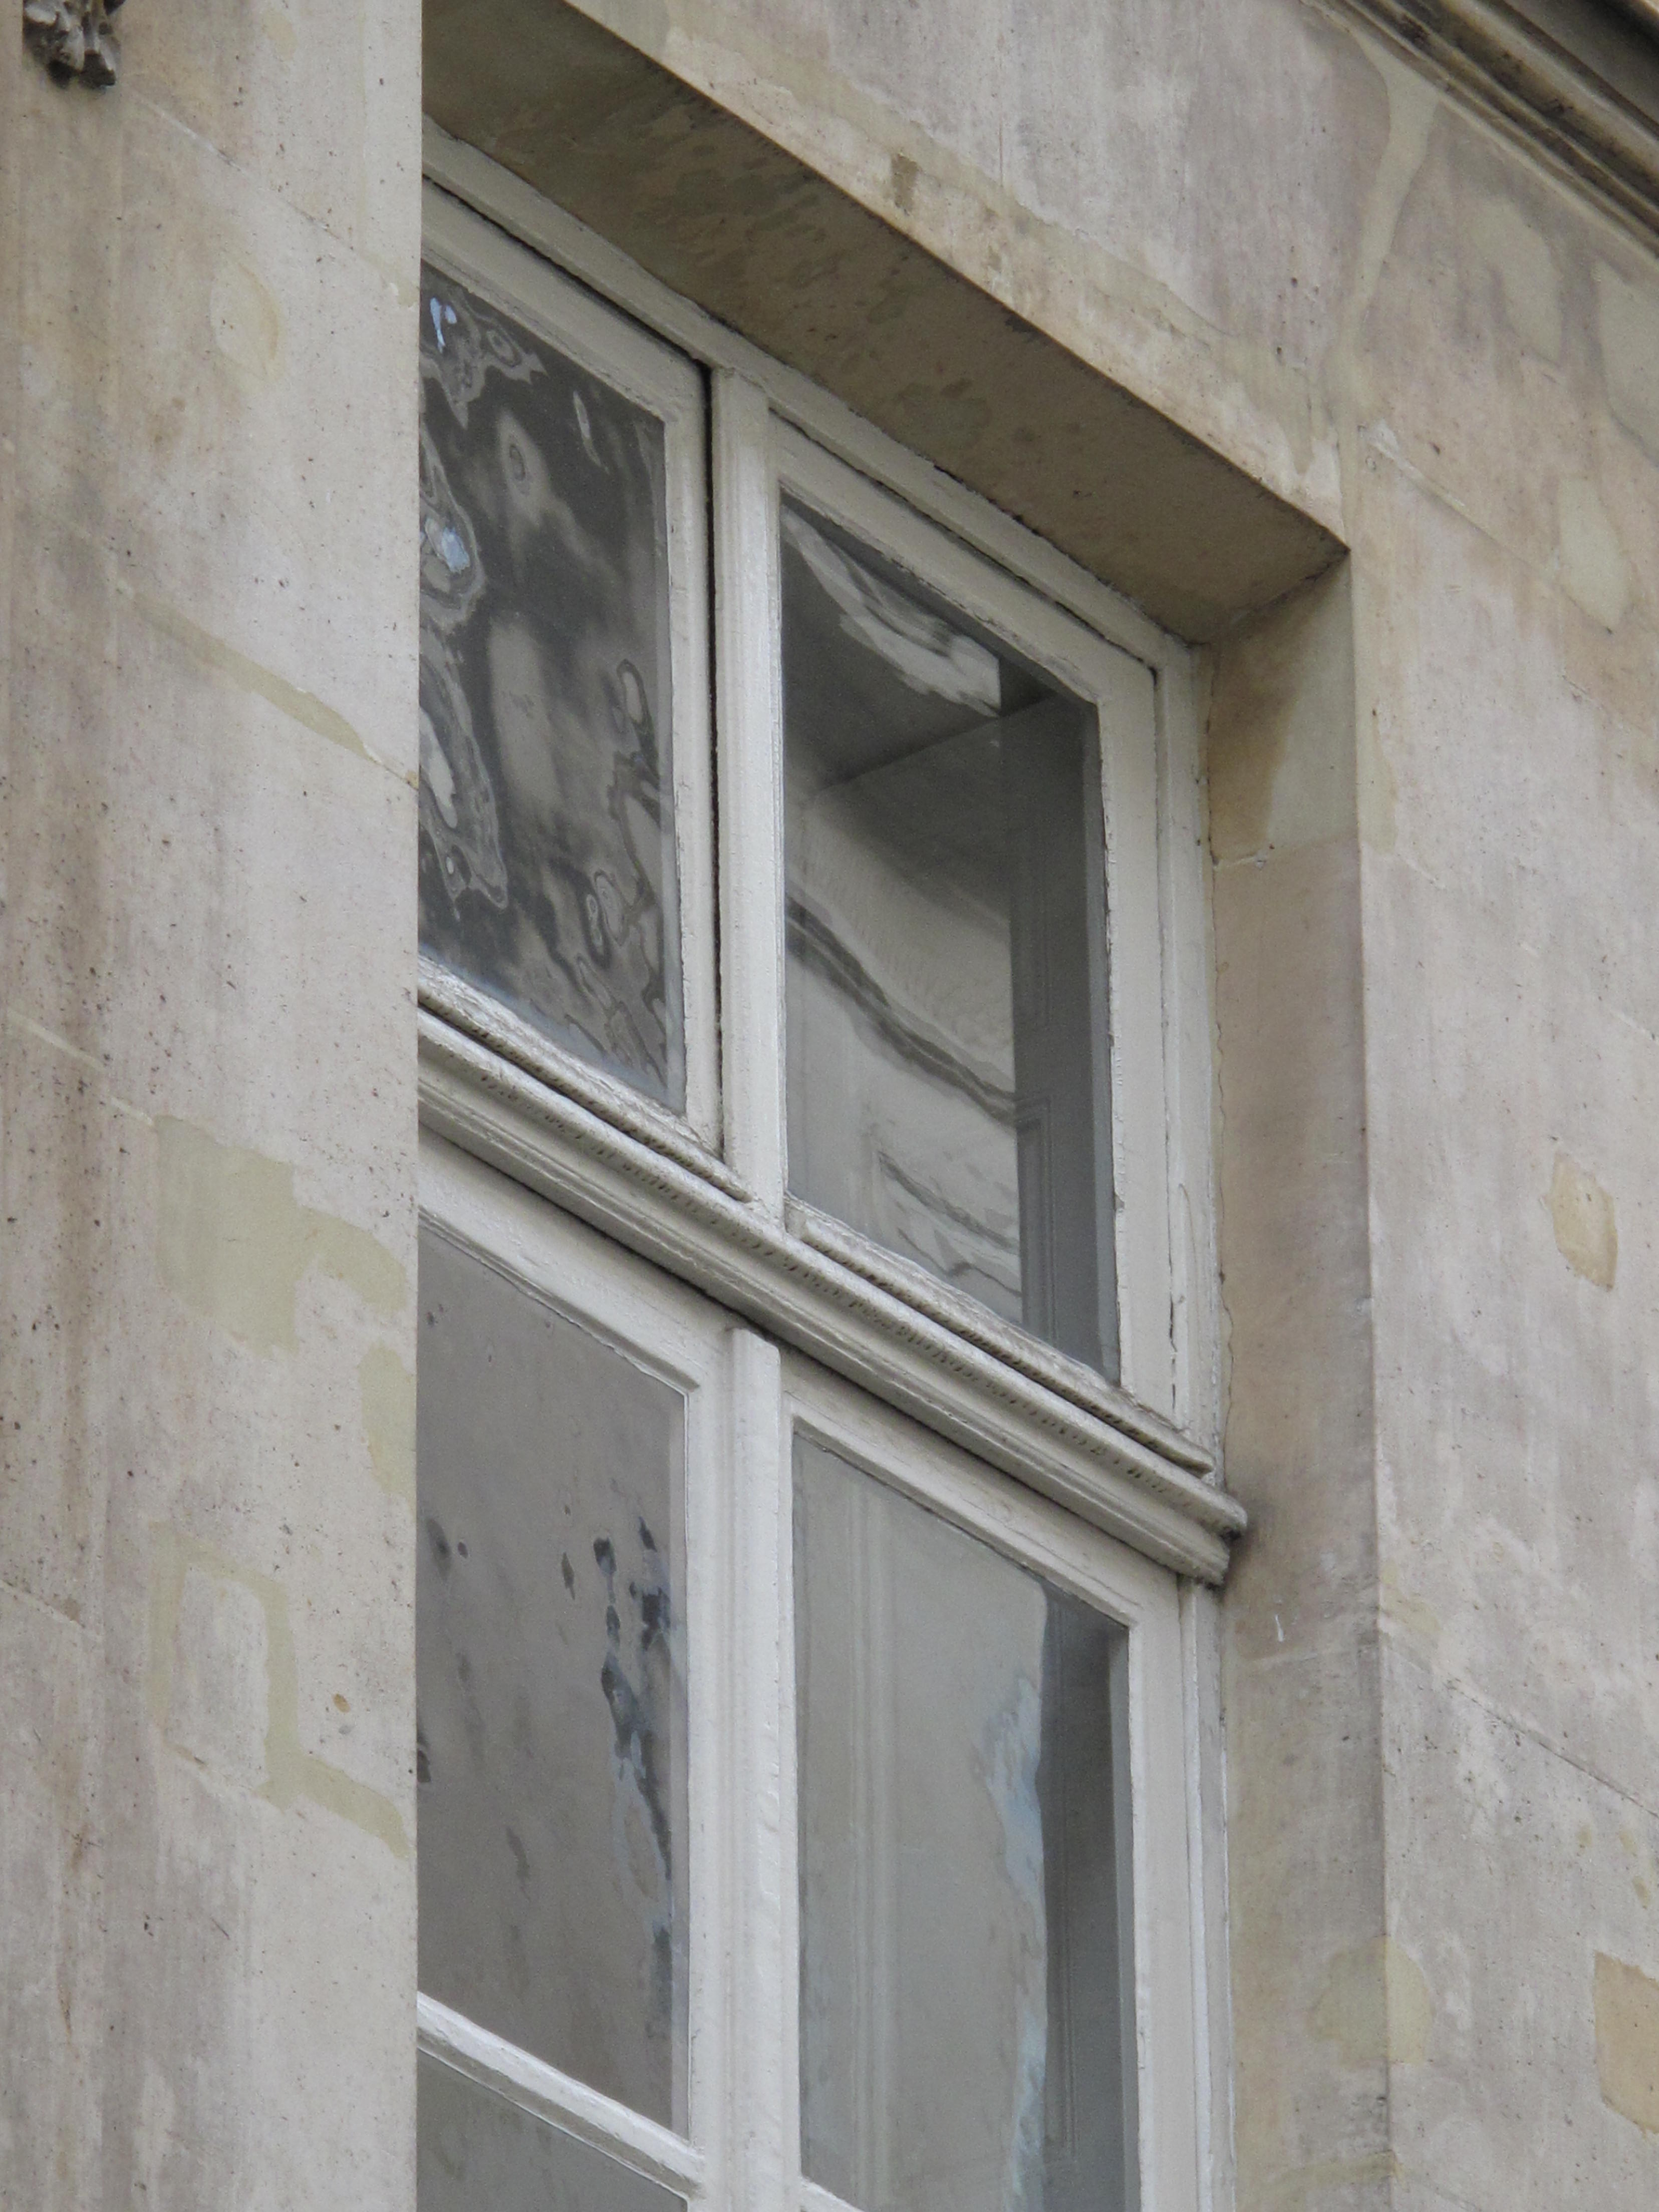 Le vitrage désigne l'ensemble de la vitre et de son châssis.  © Tangopaso, Domaine public, Wikimedia Commons